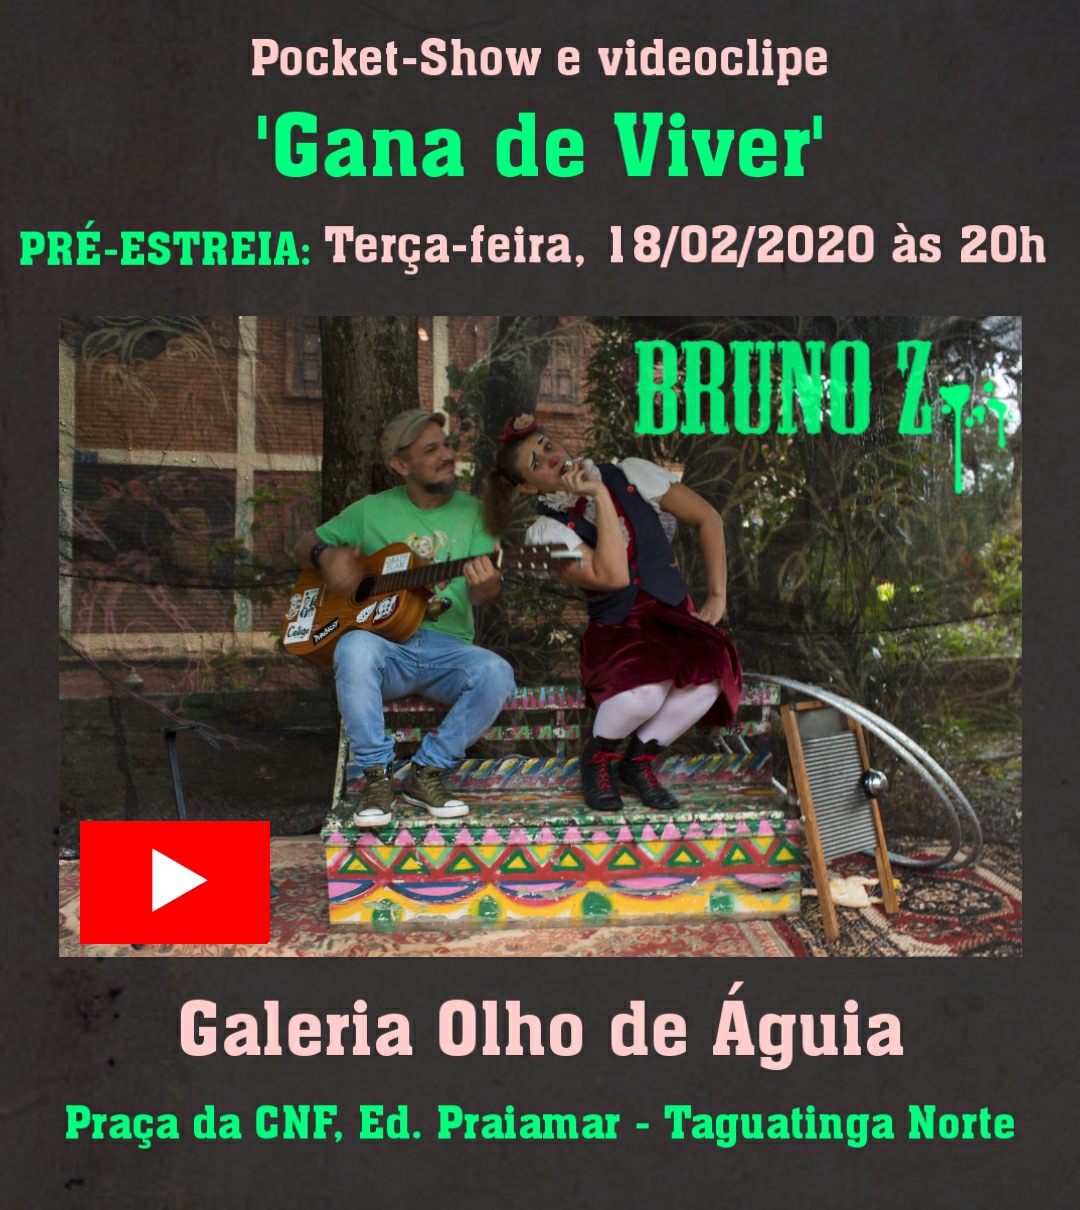 Bruno Z lança o videoclipe “Gana de Viver” com participação da palhaça Berinjela dia 18 na Galeria Olho de Águia.Taguatinga Norte.